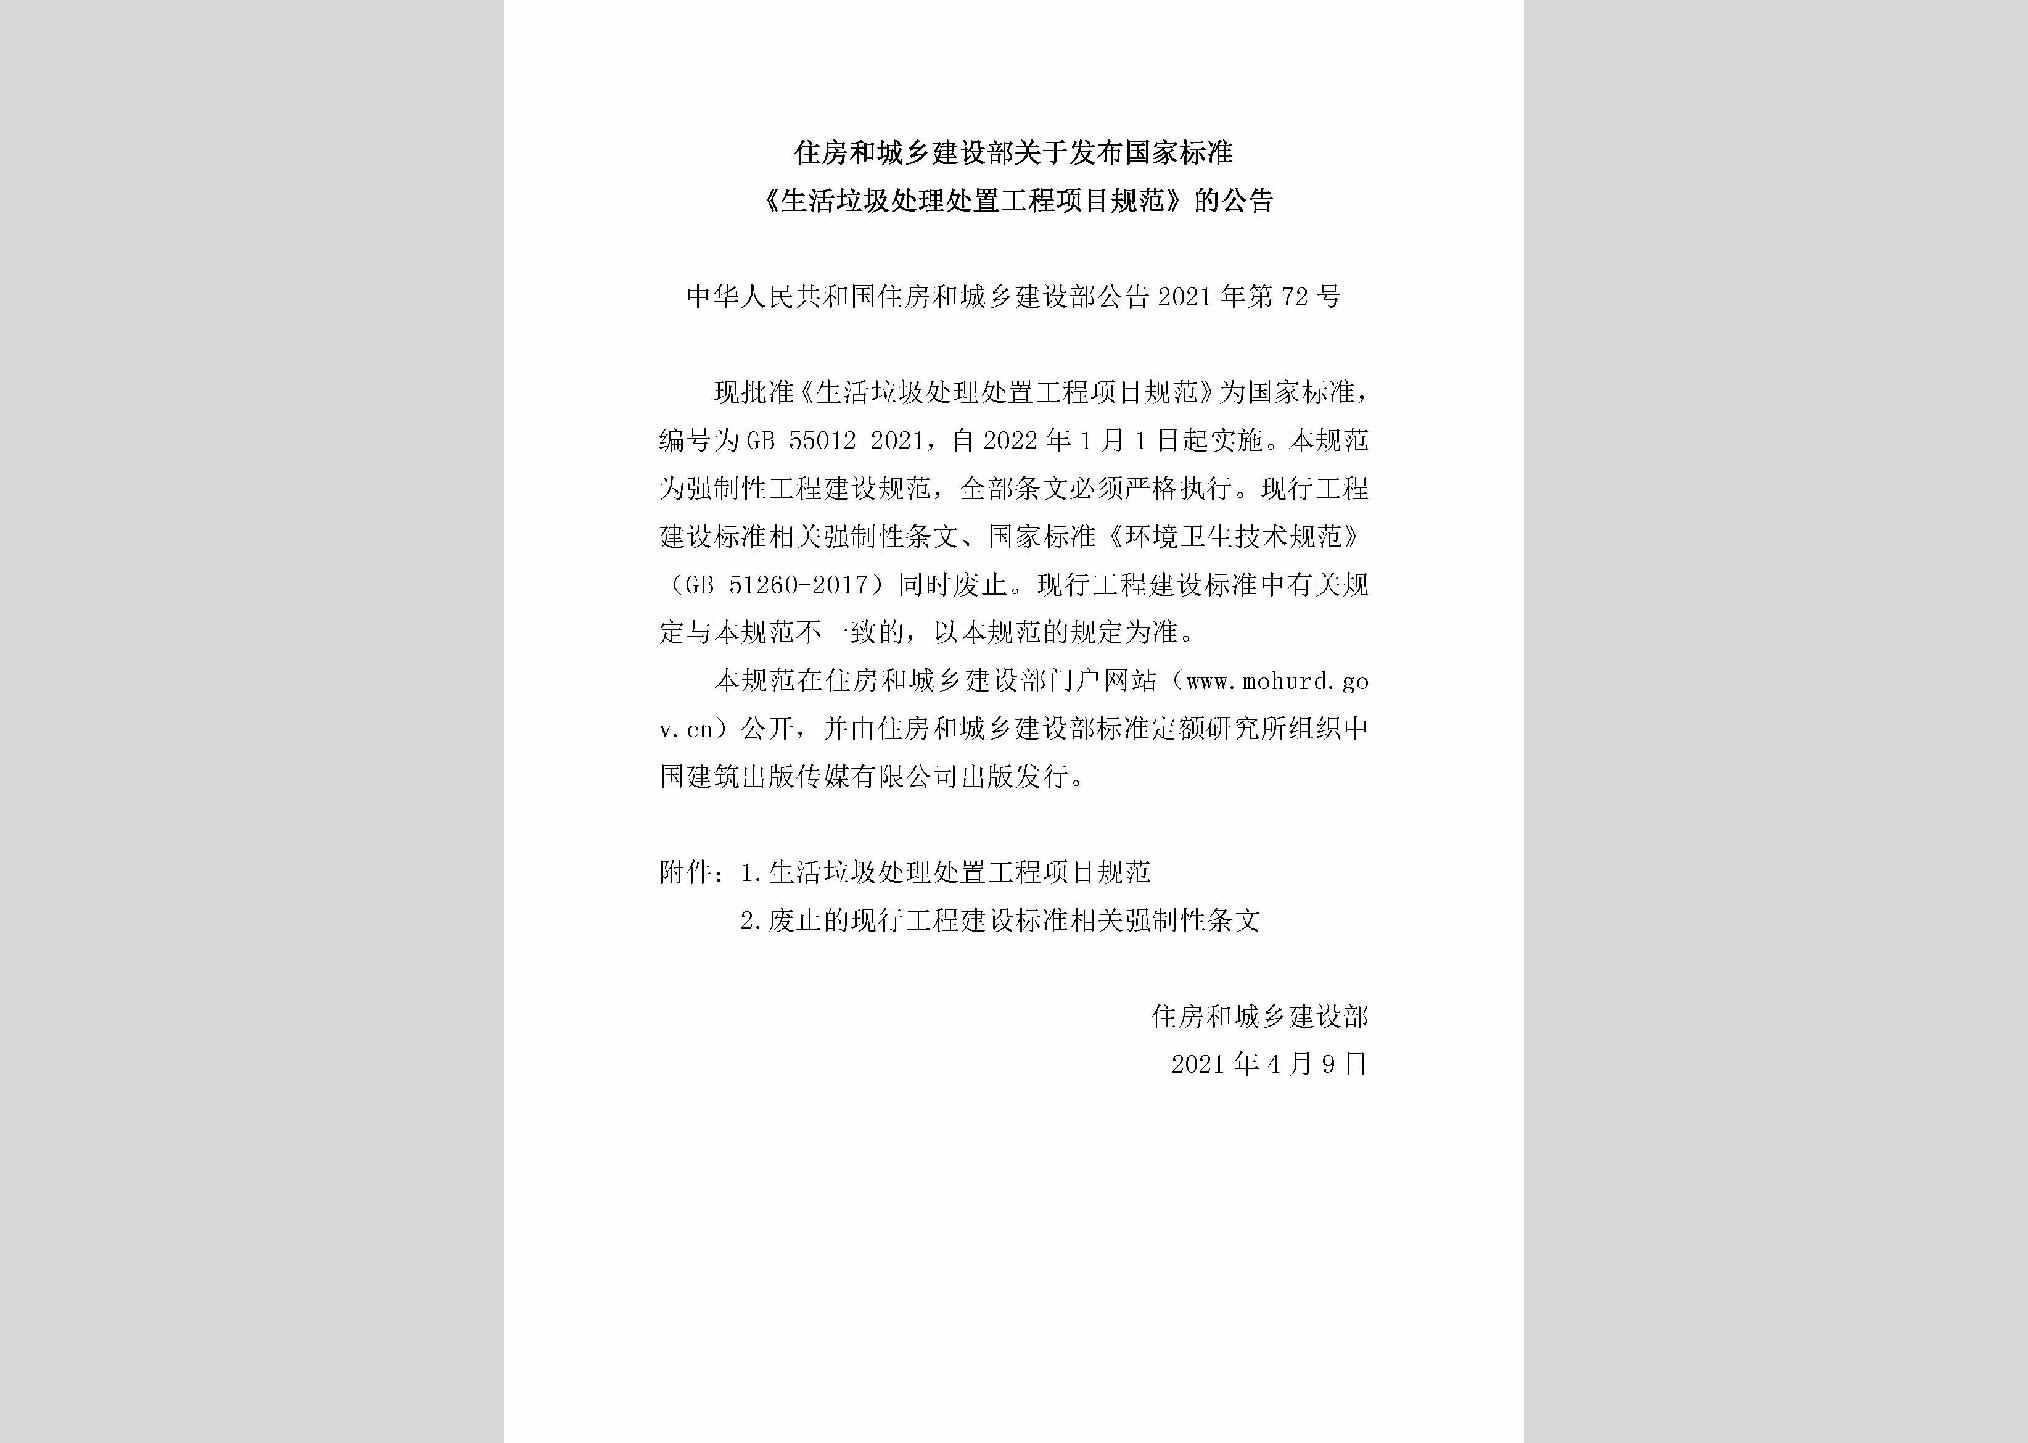 中华人民共和国住房和城乡建设部公告2021年第72号：住房和城乡建设部关于发布国家标准《生活垃圾处理处置工程项目规范》的公告